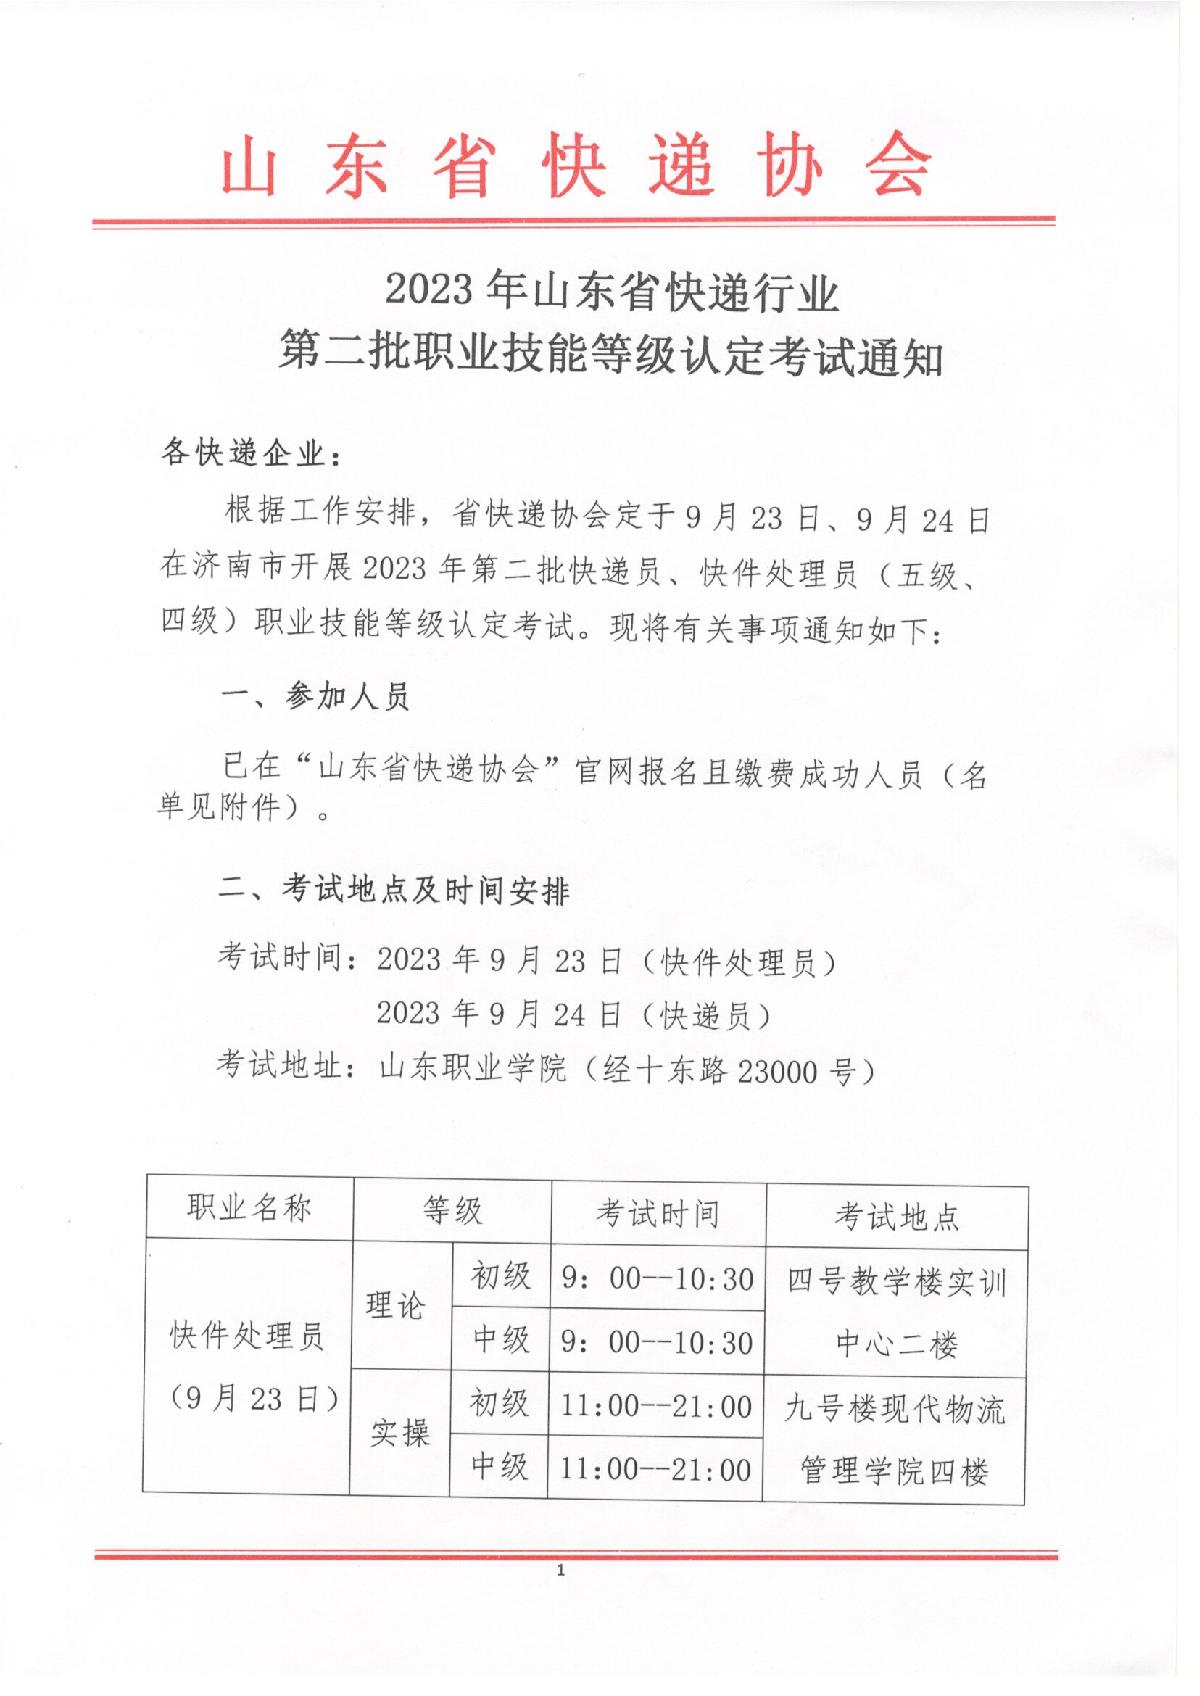 2023年山东省快递行业第二批职业技能等级认定考试通知_1.JPG